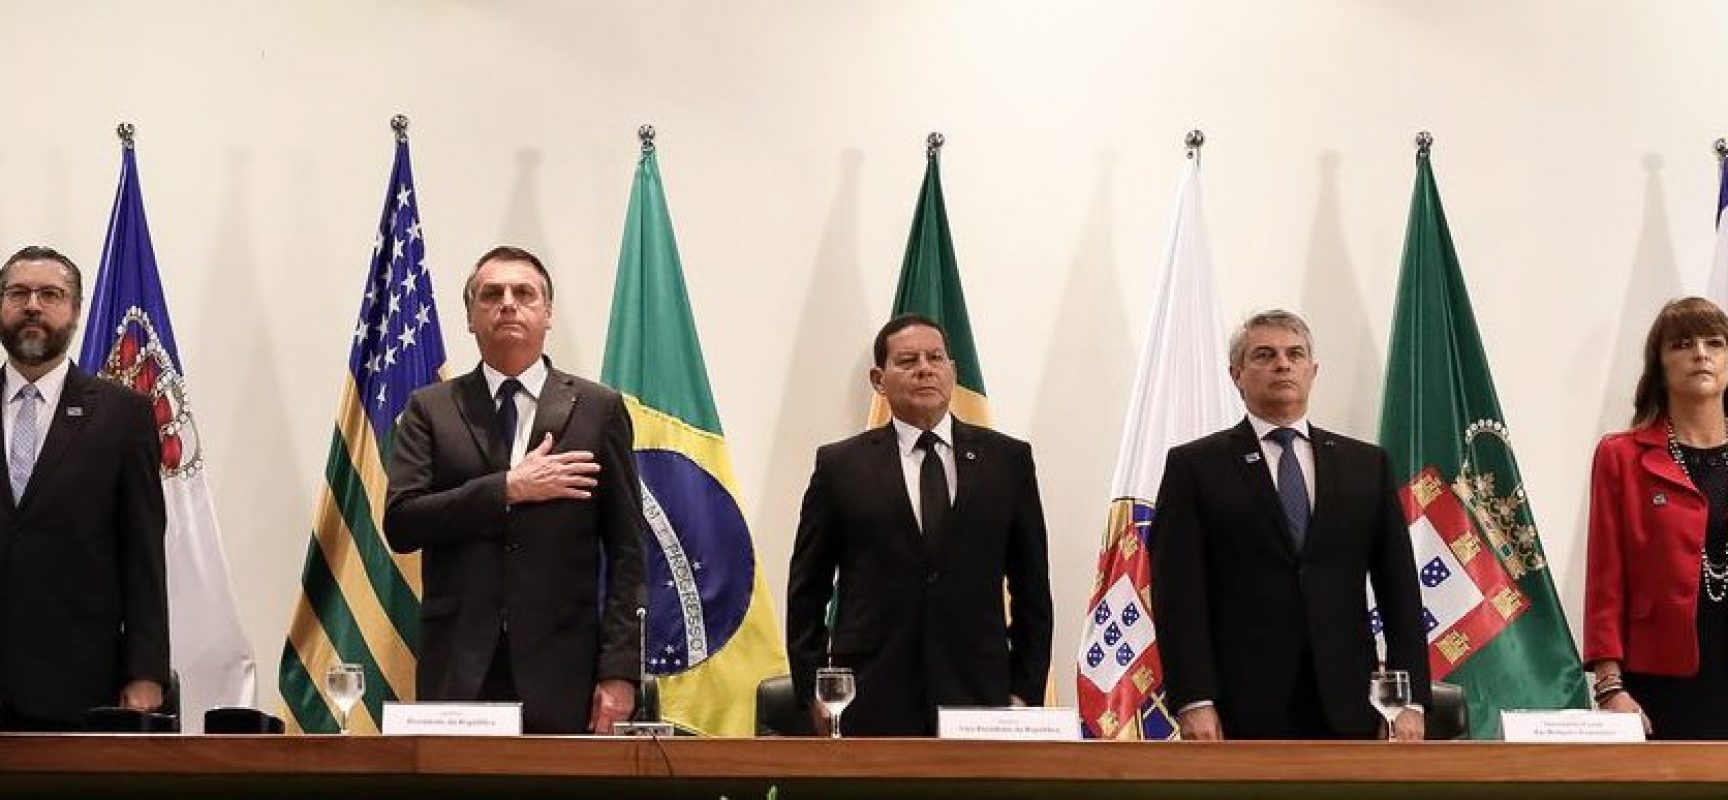 NOMEAÇÃO: Bolsonaro avalia indicações para PGR